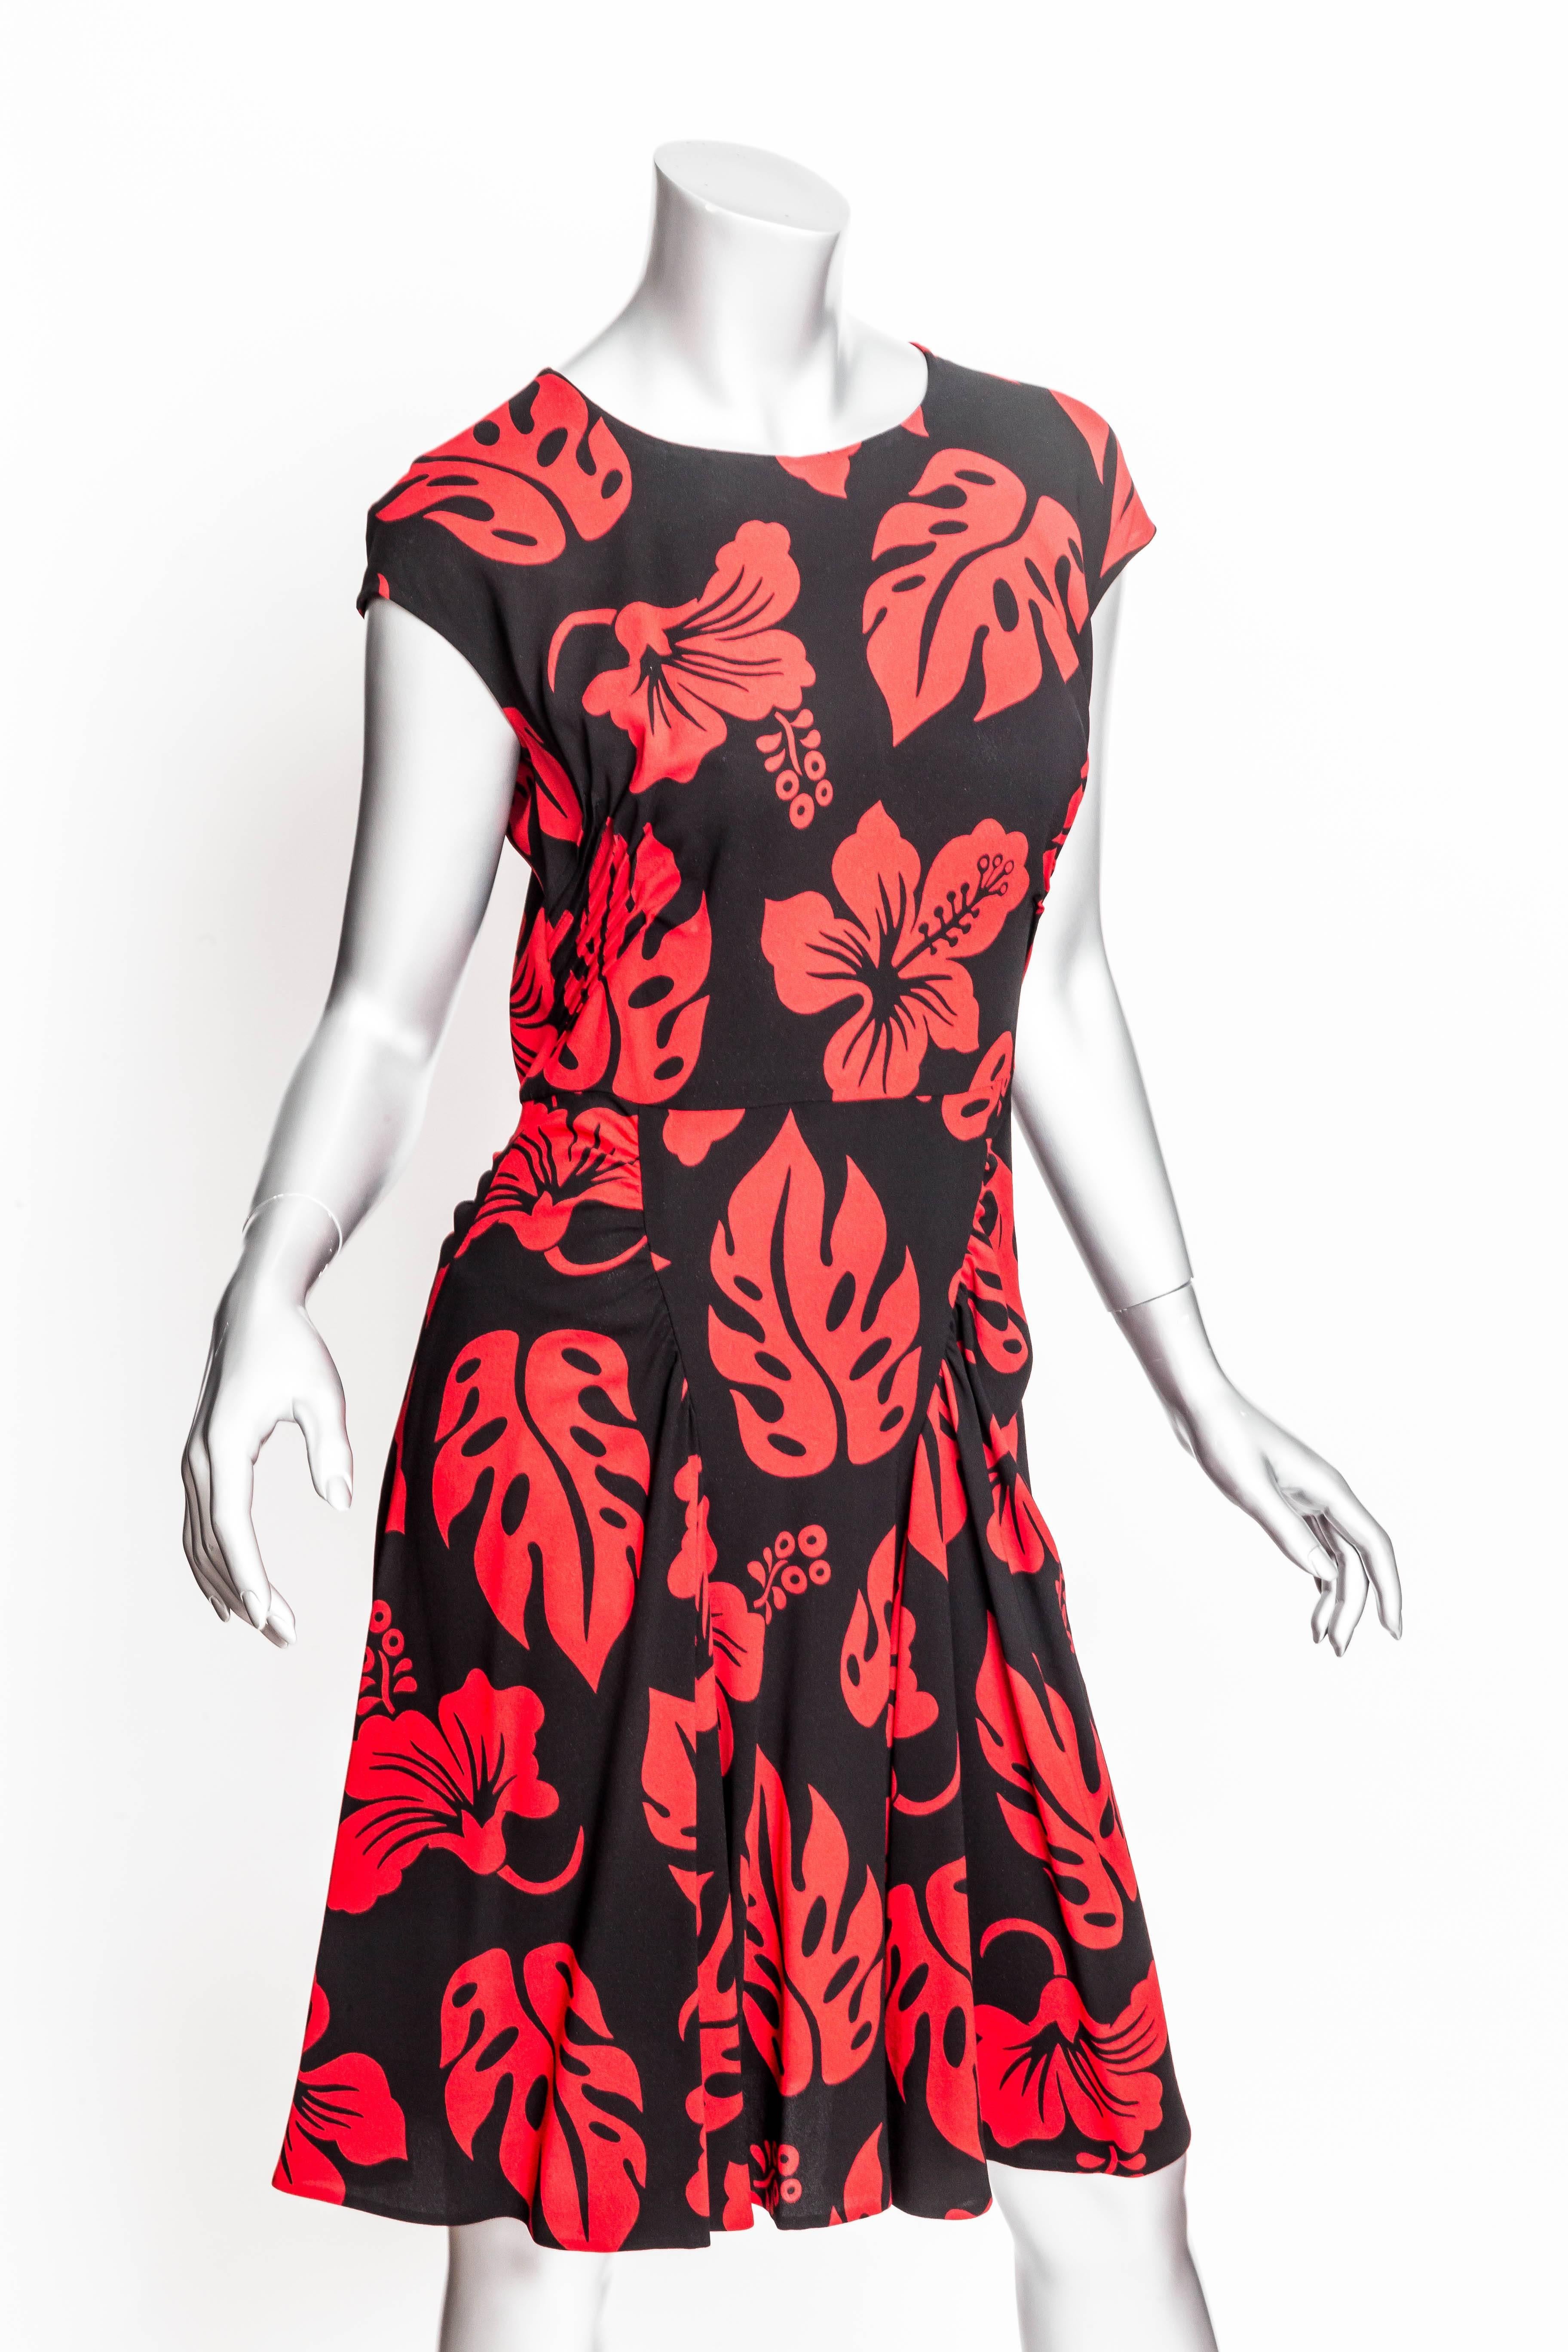 Prada Red and Black Print Dress - 44 3